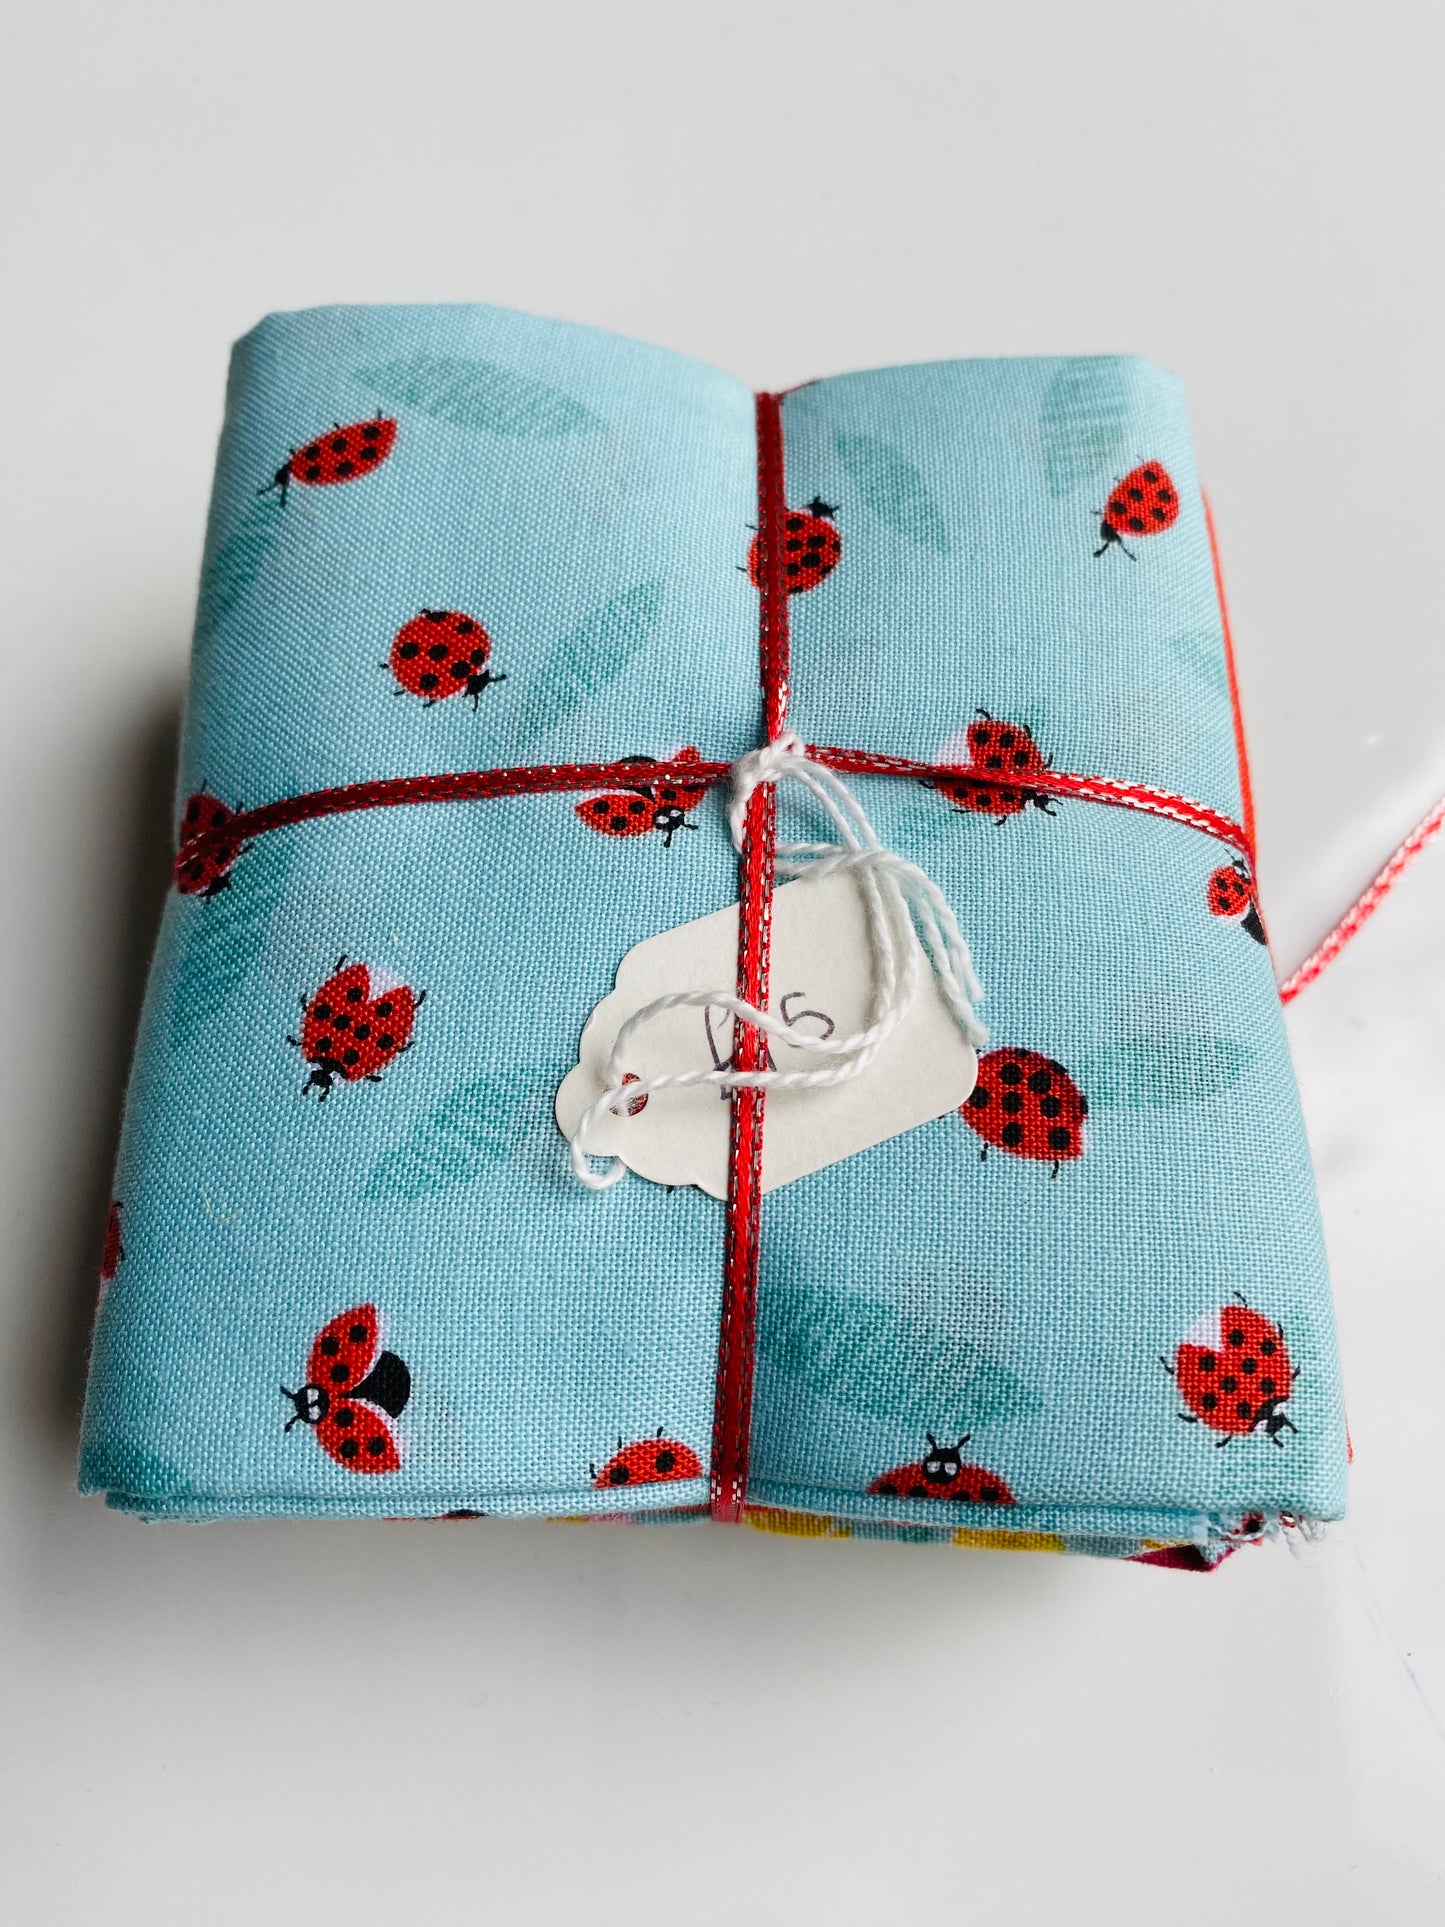 Fabric Fat Quarter Bundle - 'Ladybirds' - 100% Cotton